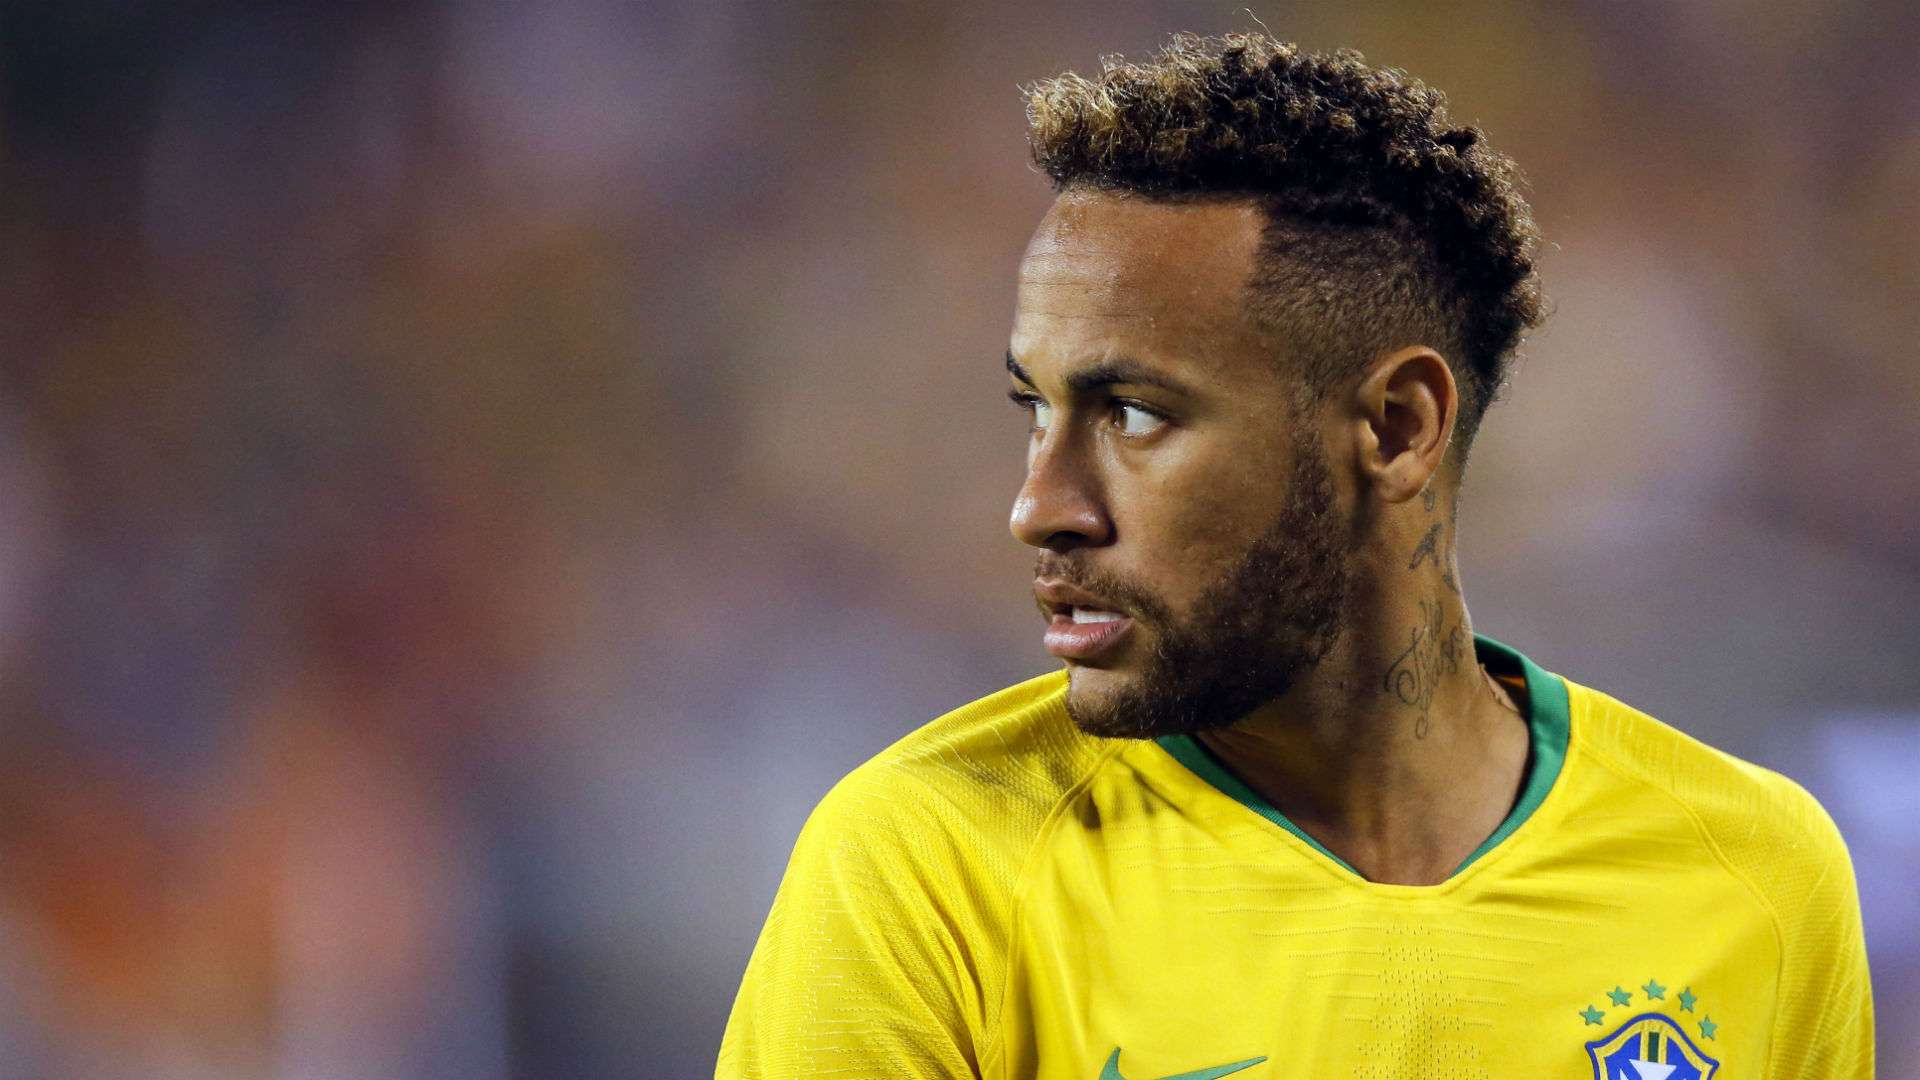 Neymar Brazil USA international friendly 2018